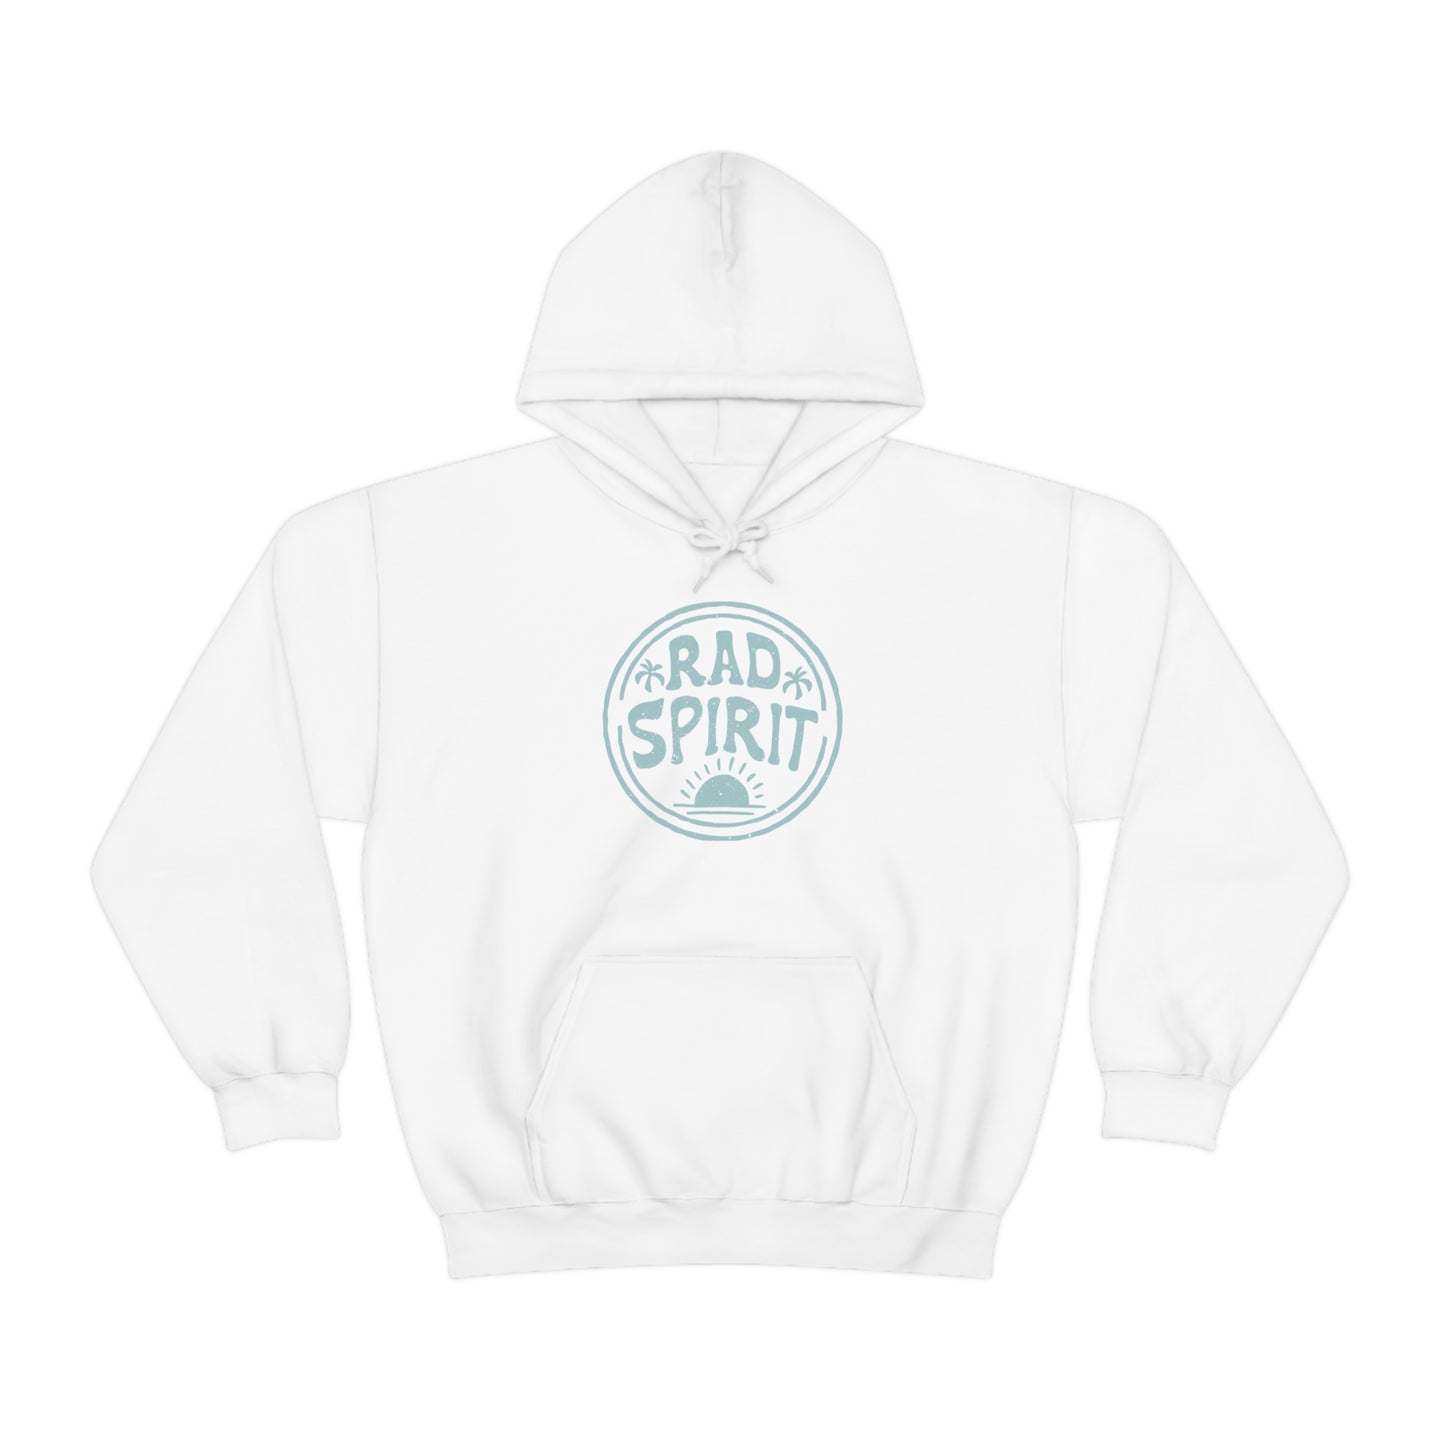 "Rad Spirit" Unisex Hooded Sweatshirt